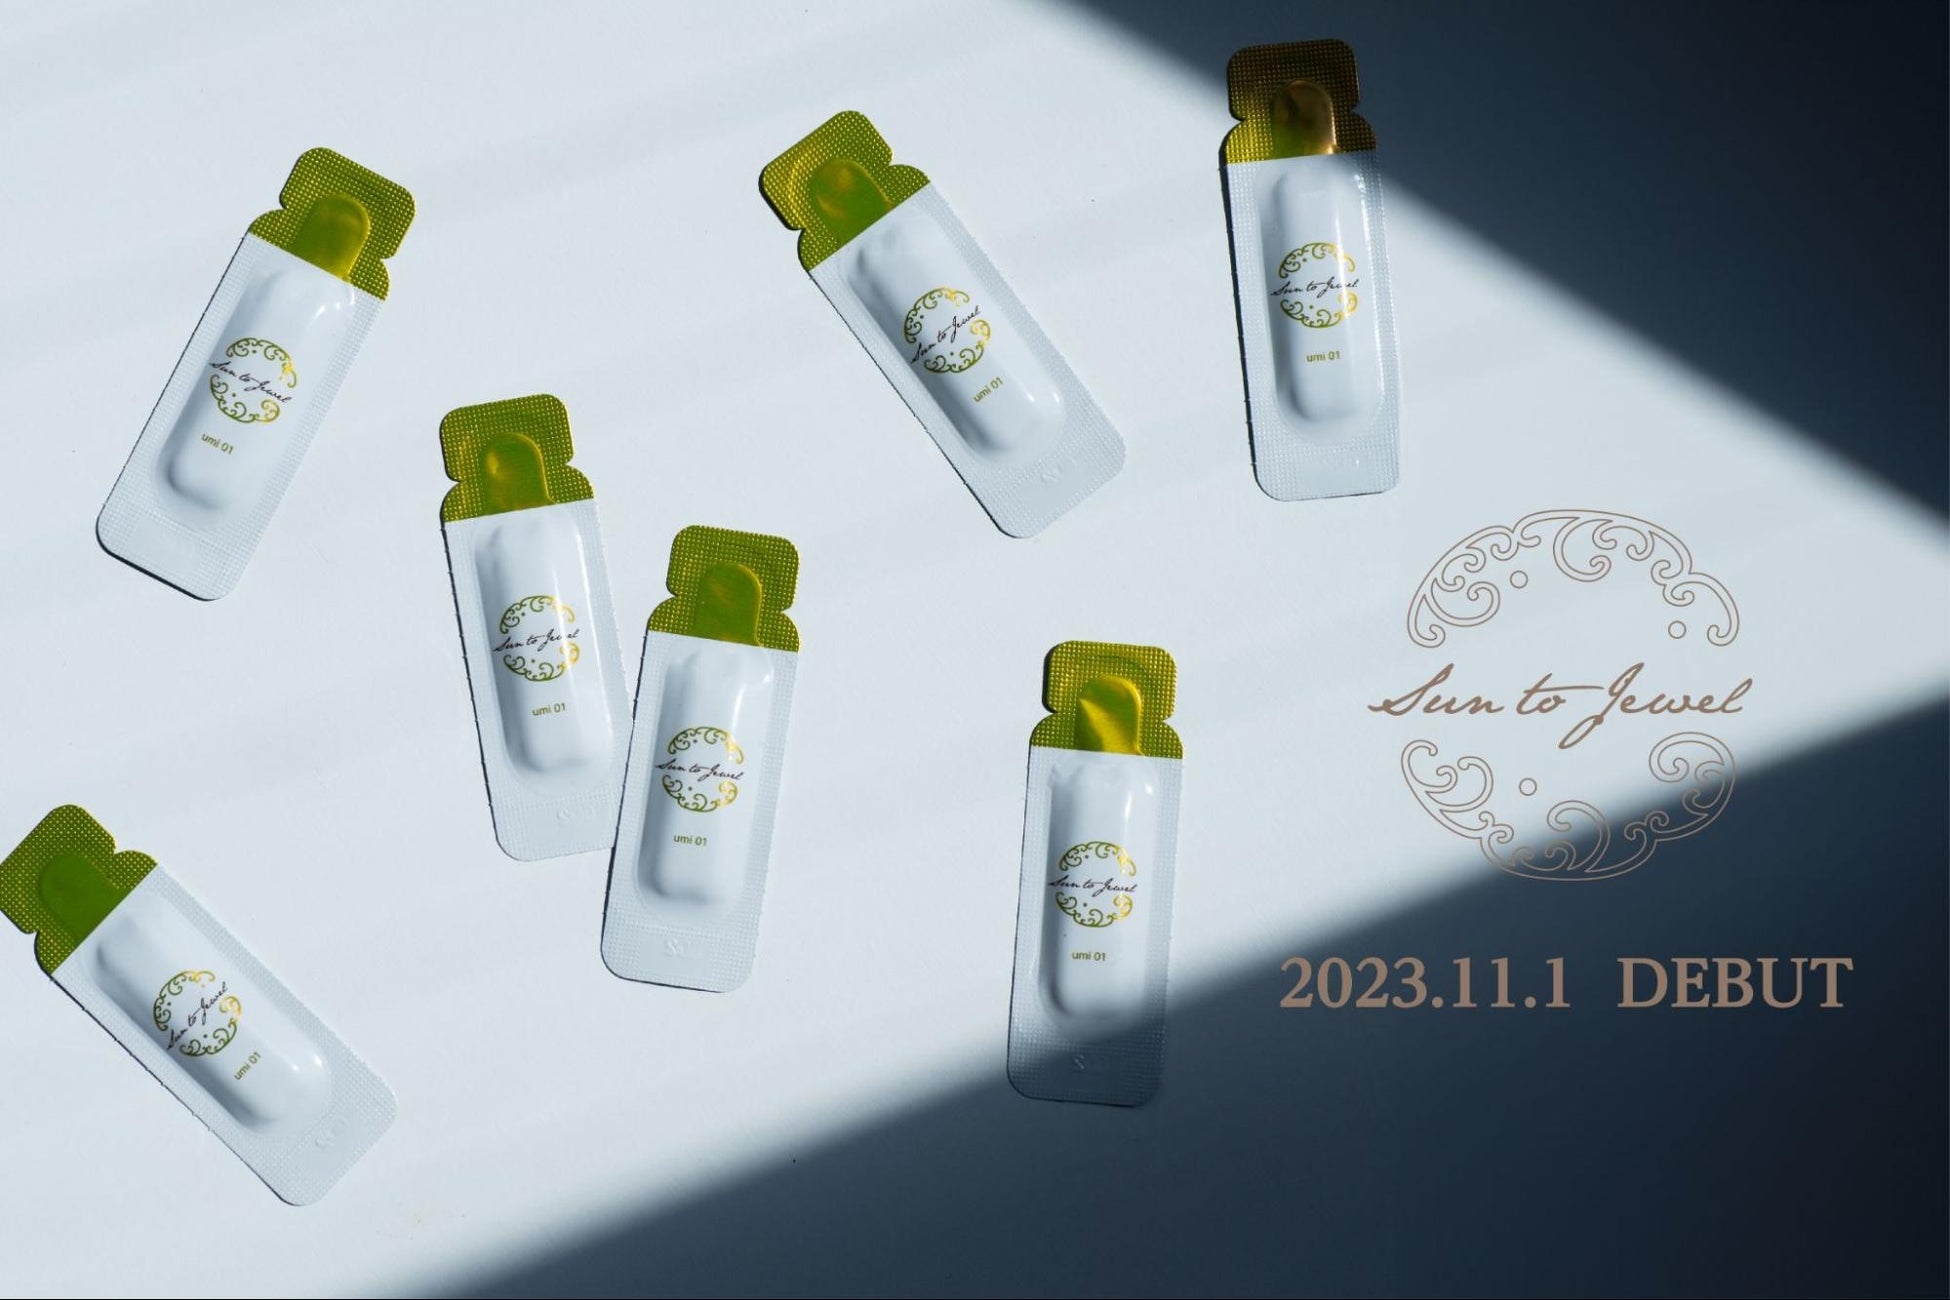 繊細肌の未来を変える、自然由来のスキン&フェムケアブランド『Sun to Jewel』が2023年11月1日に新登場